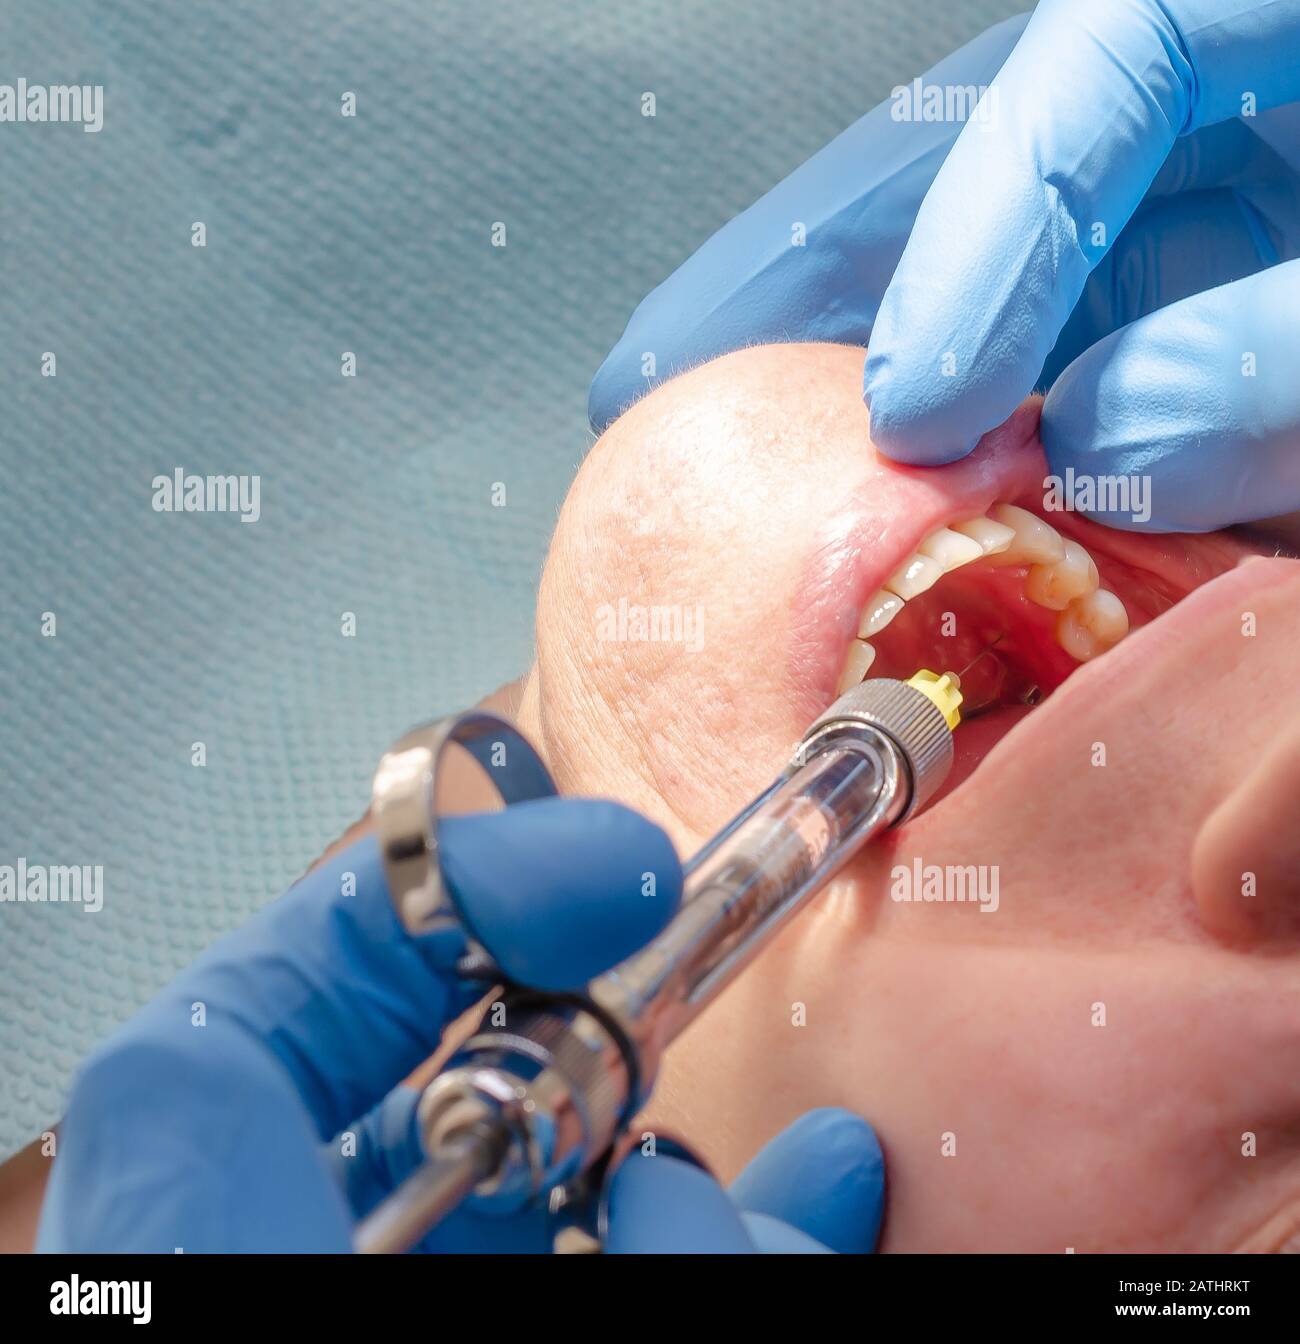 Der Arzt verabreicht dem Patienten in der Zahnklinik eine anästhetische Injektion Stockfoto